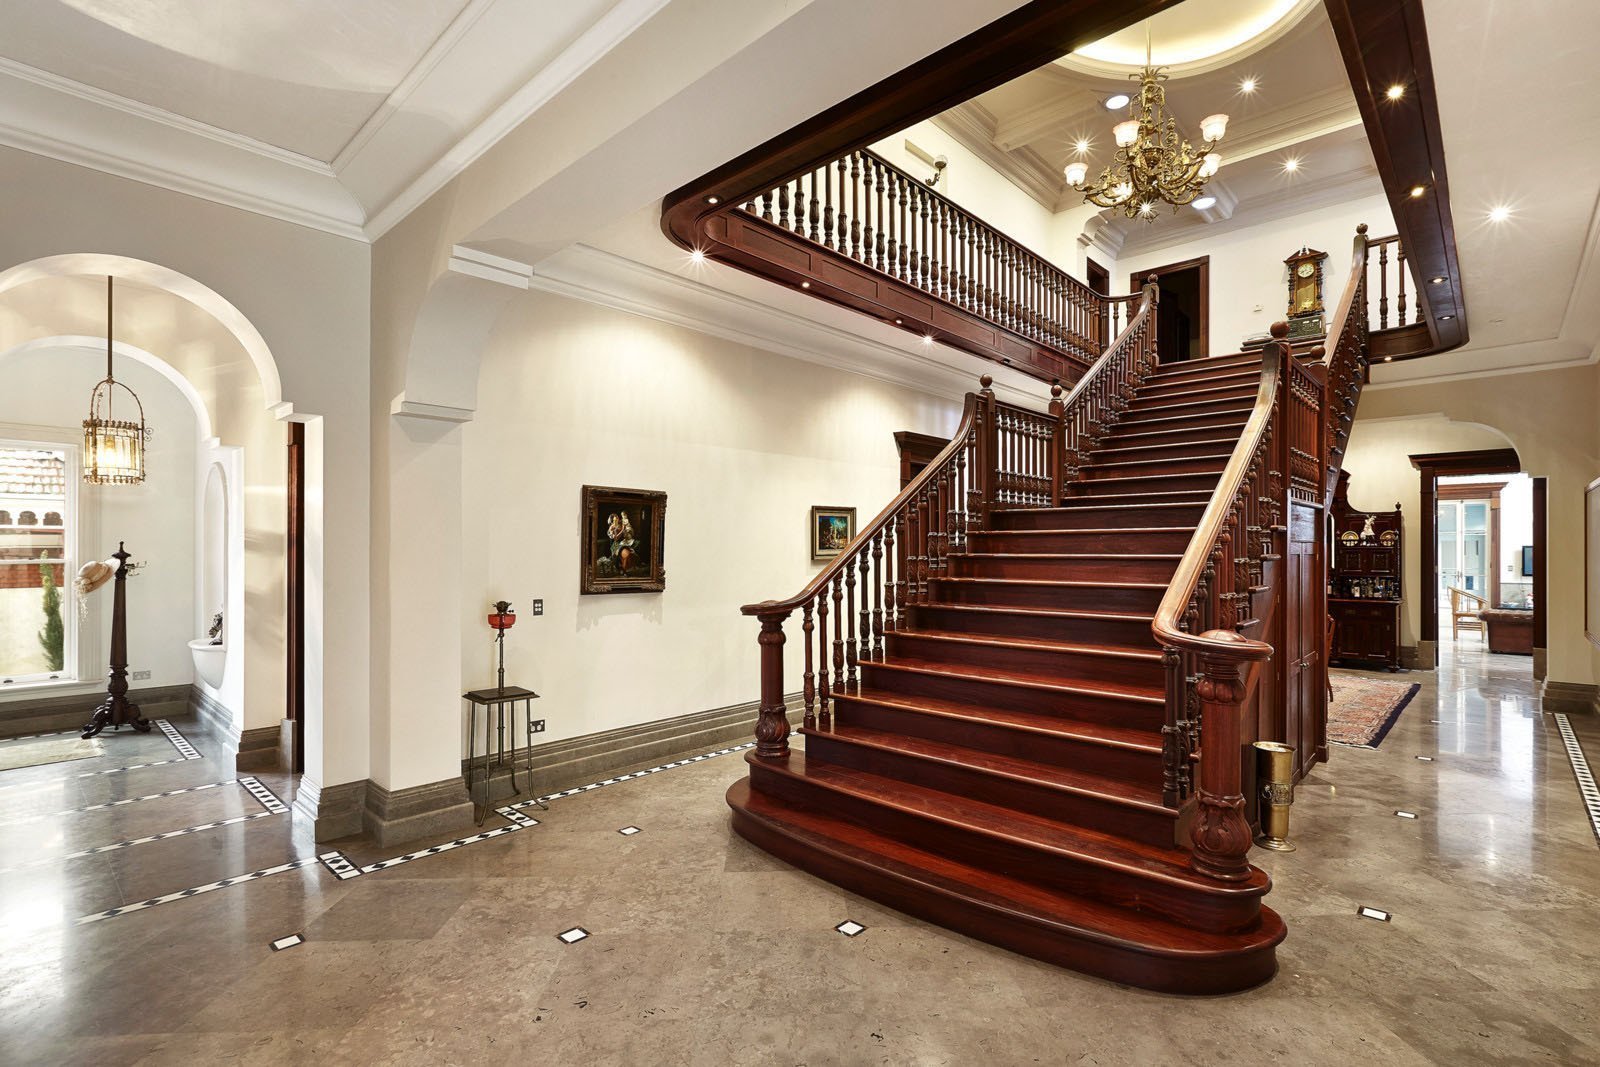 Cầu thang gỗ tự nhiên được coi là một trong những cách trang trí nội thất đẹp cho ngôi nhà 